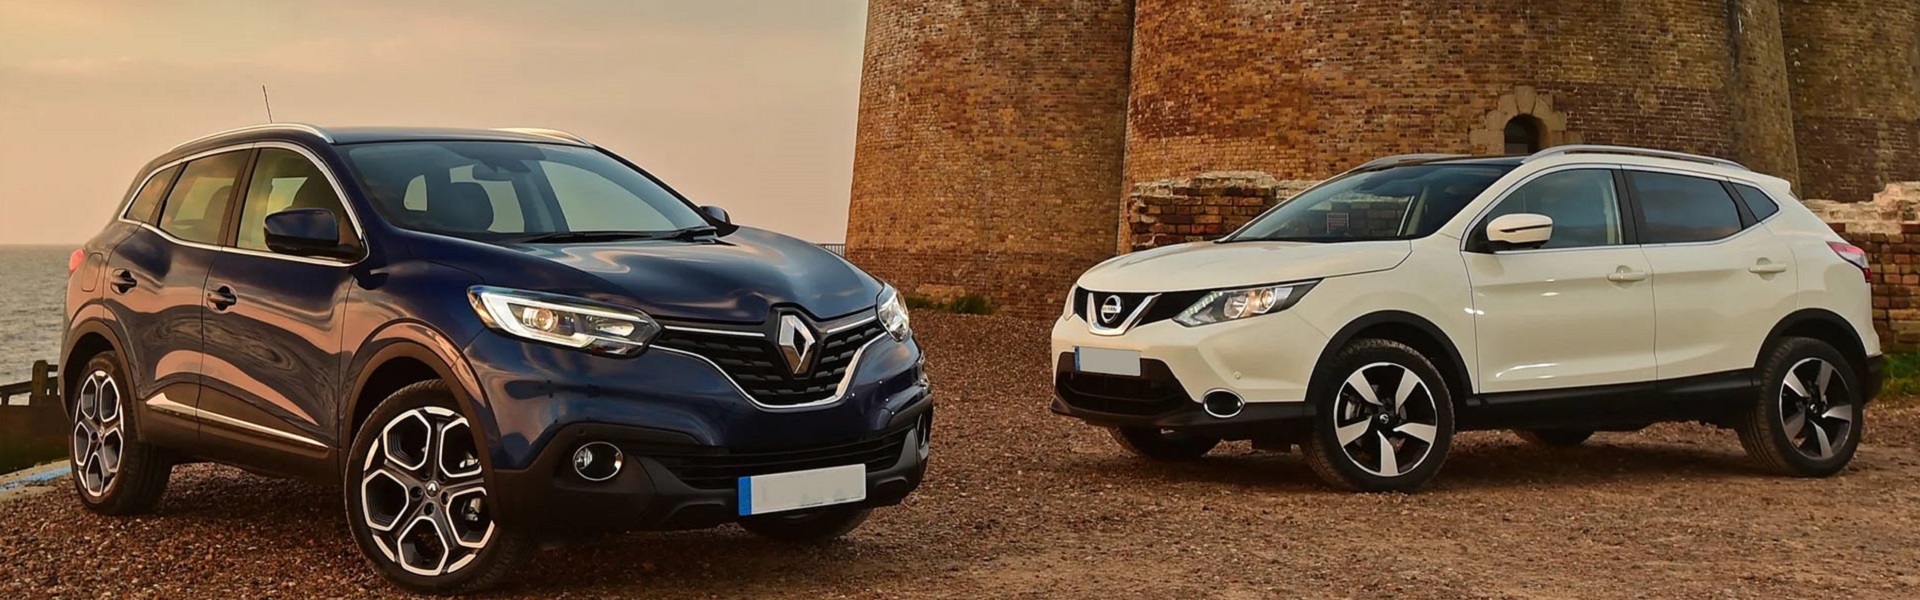 Sprej za nos | Prodaja Renault, Dacia i Nissan vozila